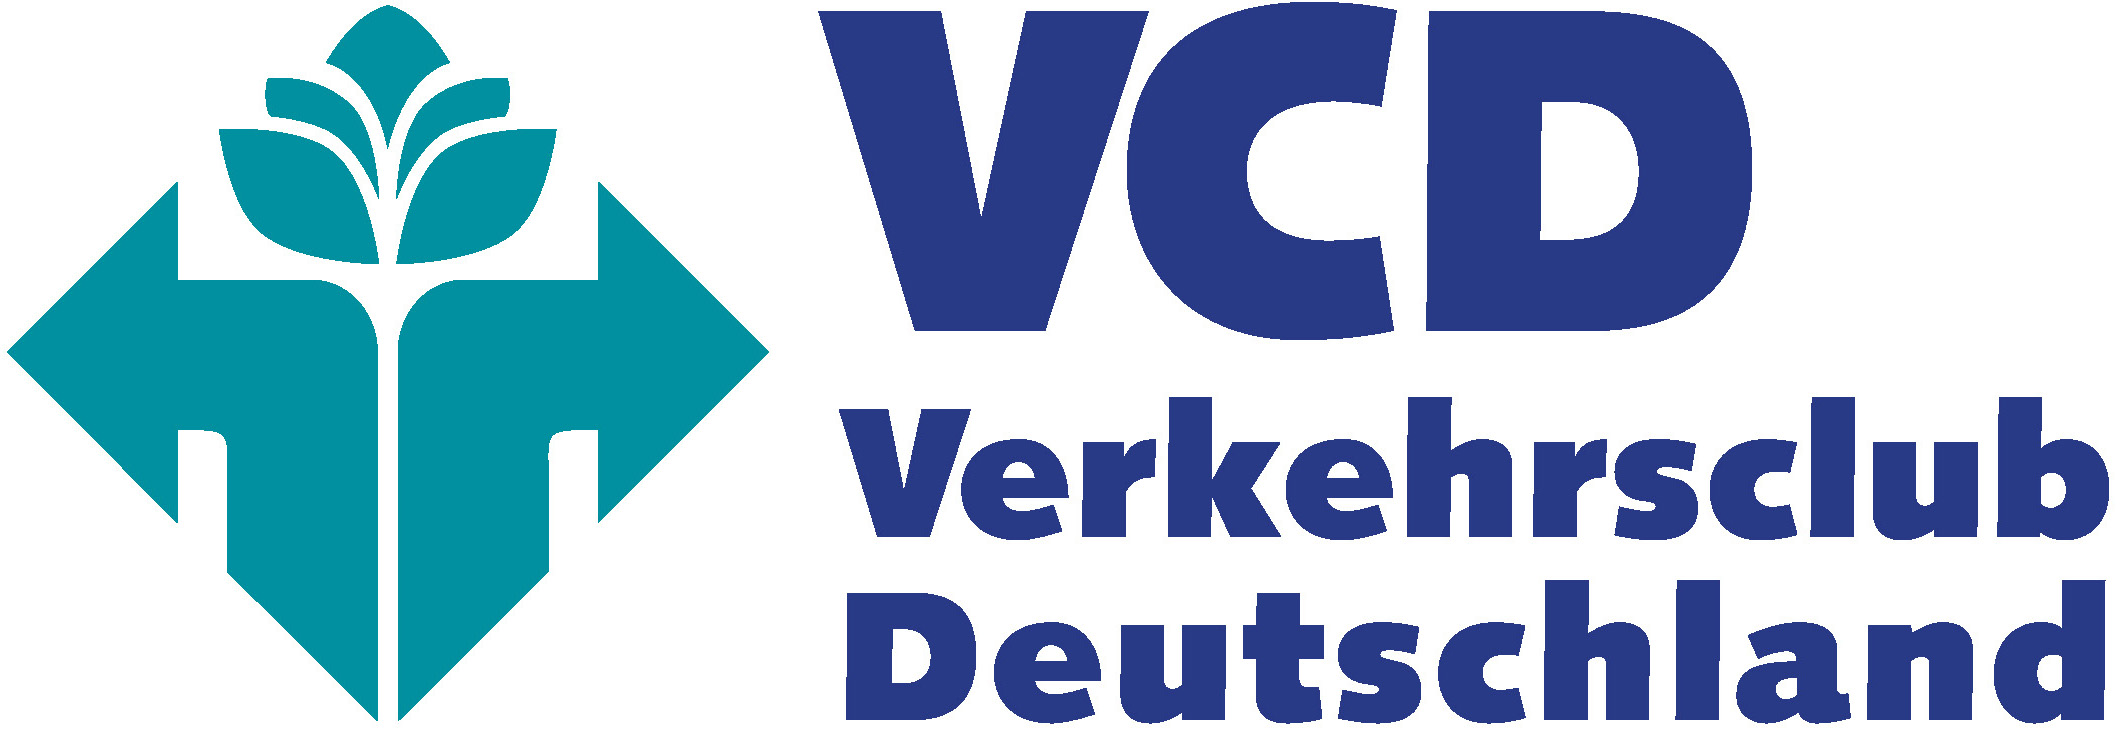 Mitgliedsverband Verkehrsclub Deutschland